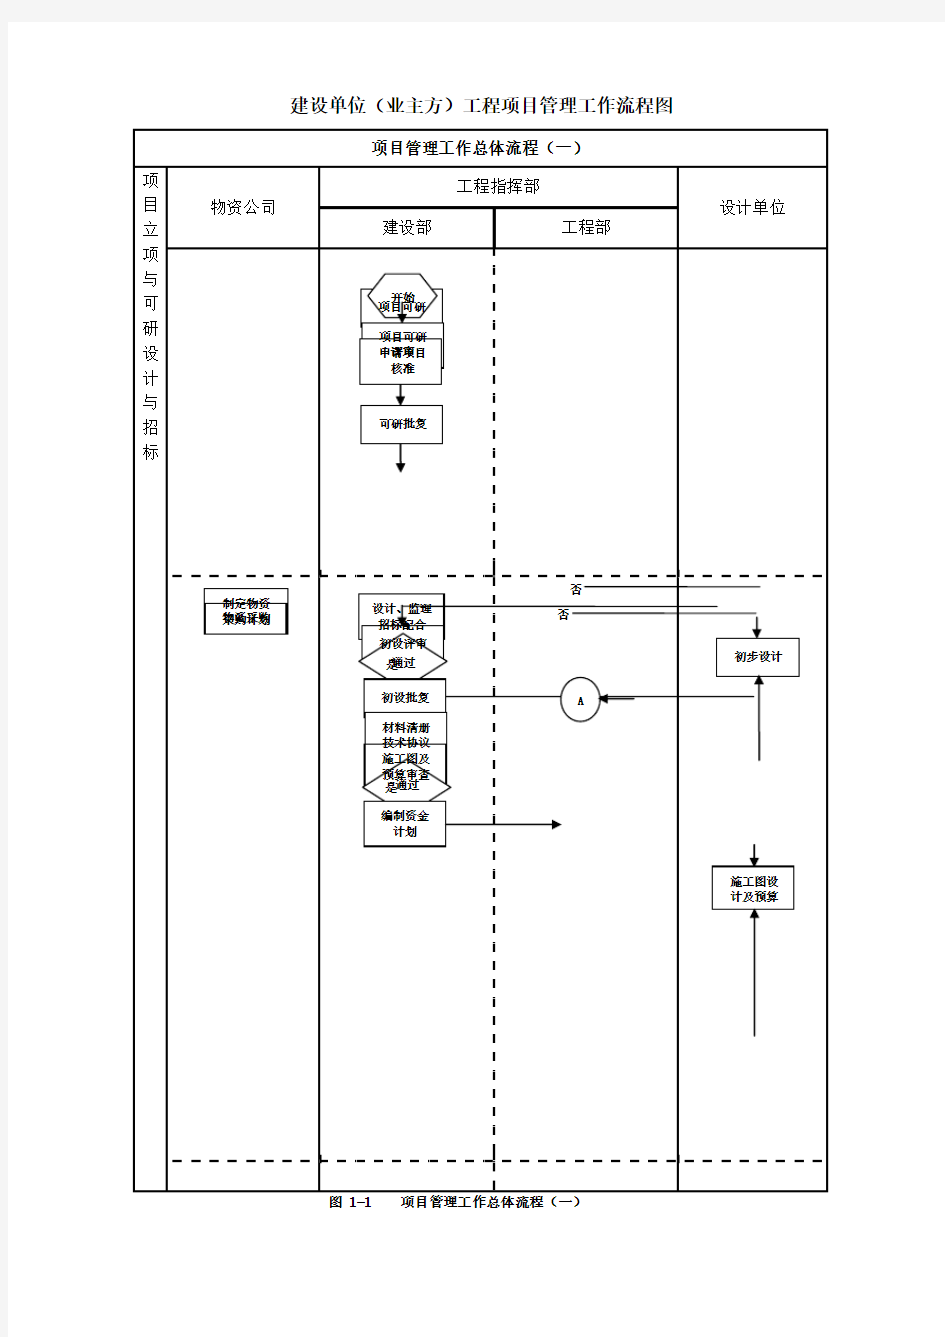 建设单位工程项目管理流程图(业主方)